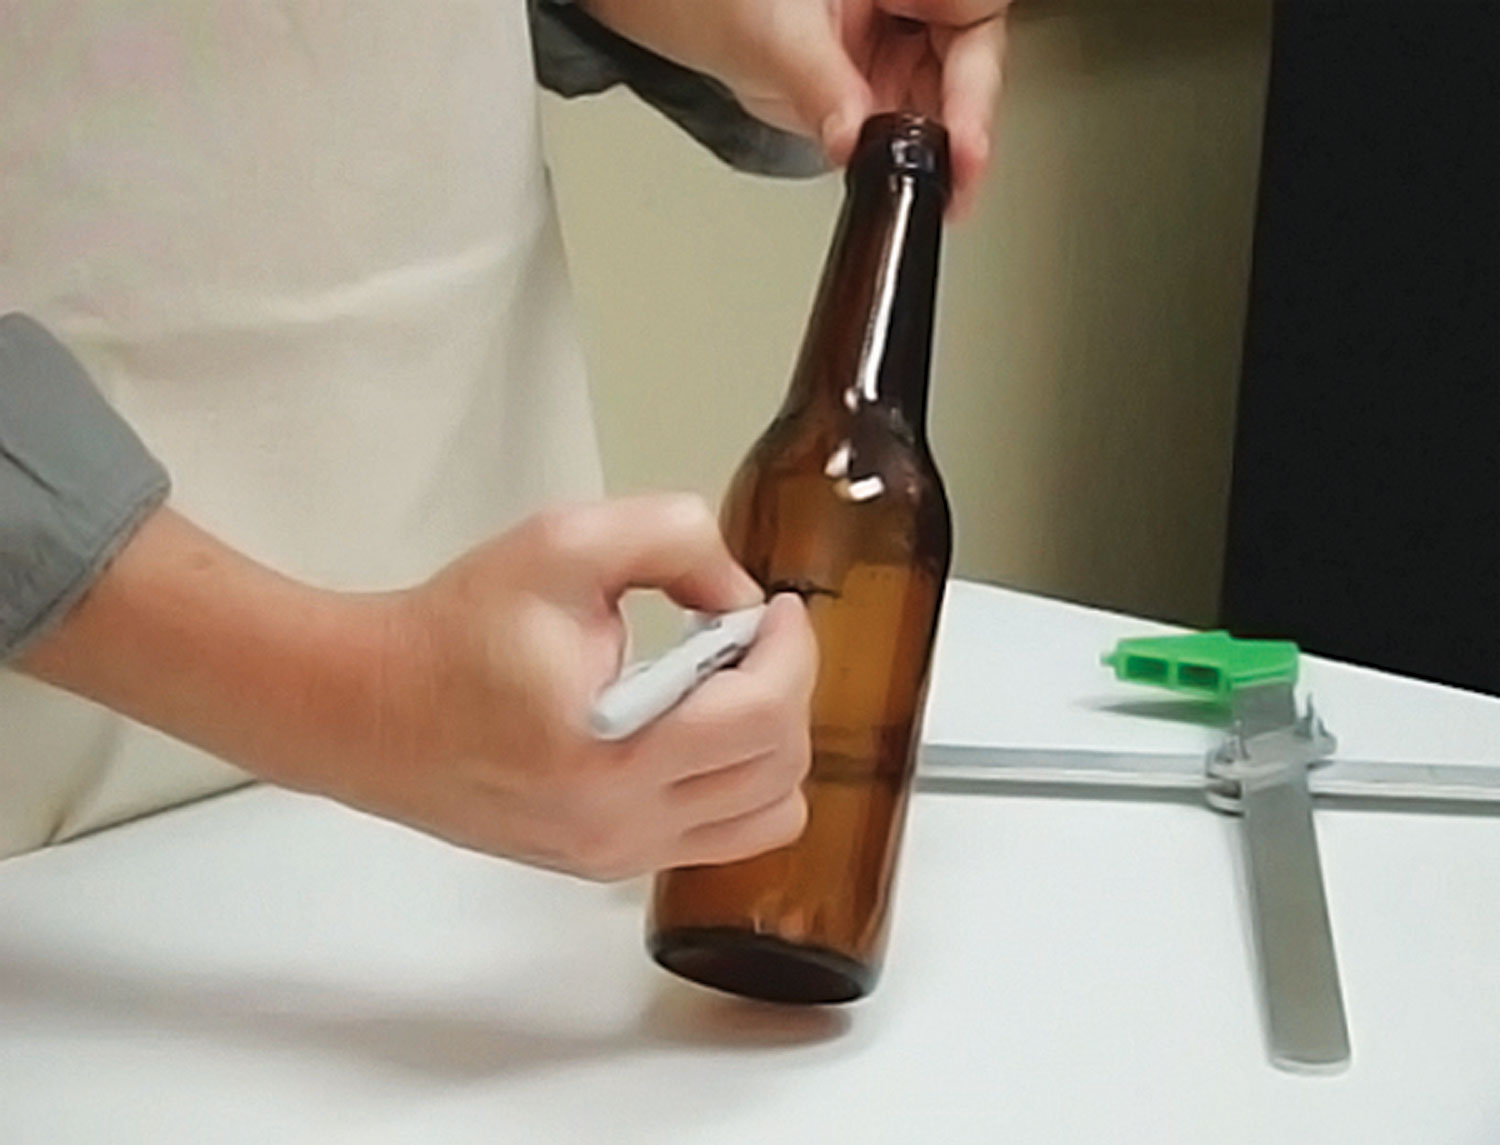 Generation Green G2 Bottle/Jar Cutter – Melt Glass Art Supply